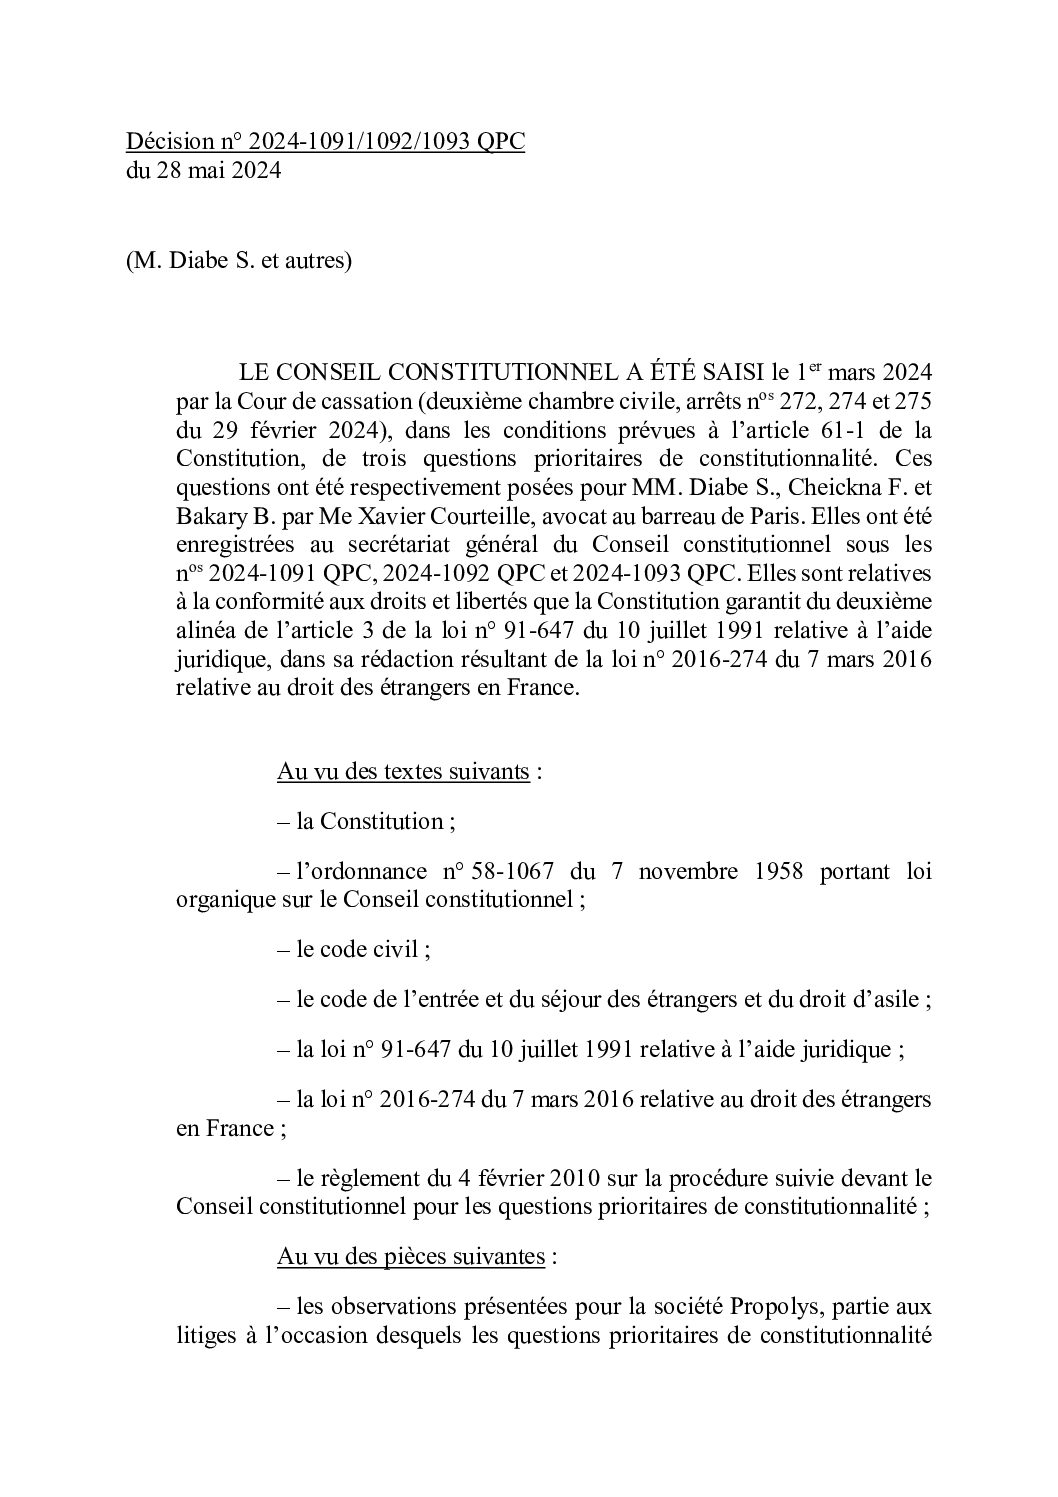 28 mai 24 : décision du conseil constitutionnel : suppression de la condition de régularité de séjour pour accéder à l’aide juridictionnelle